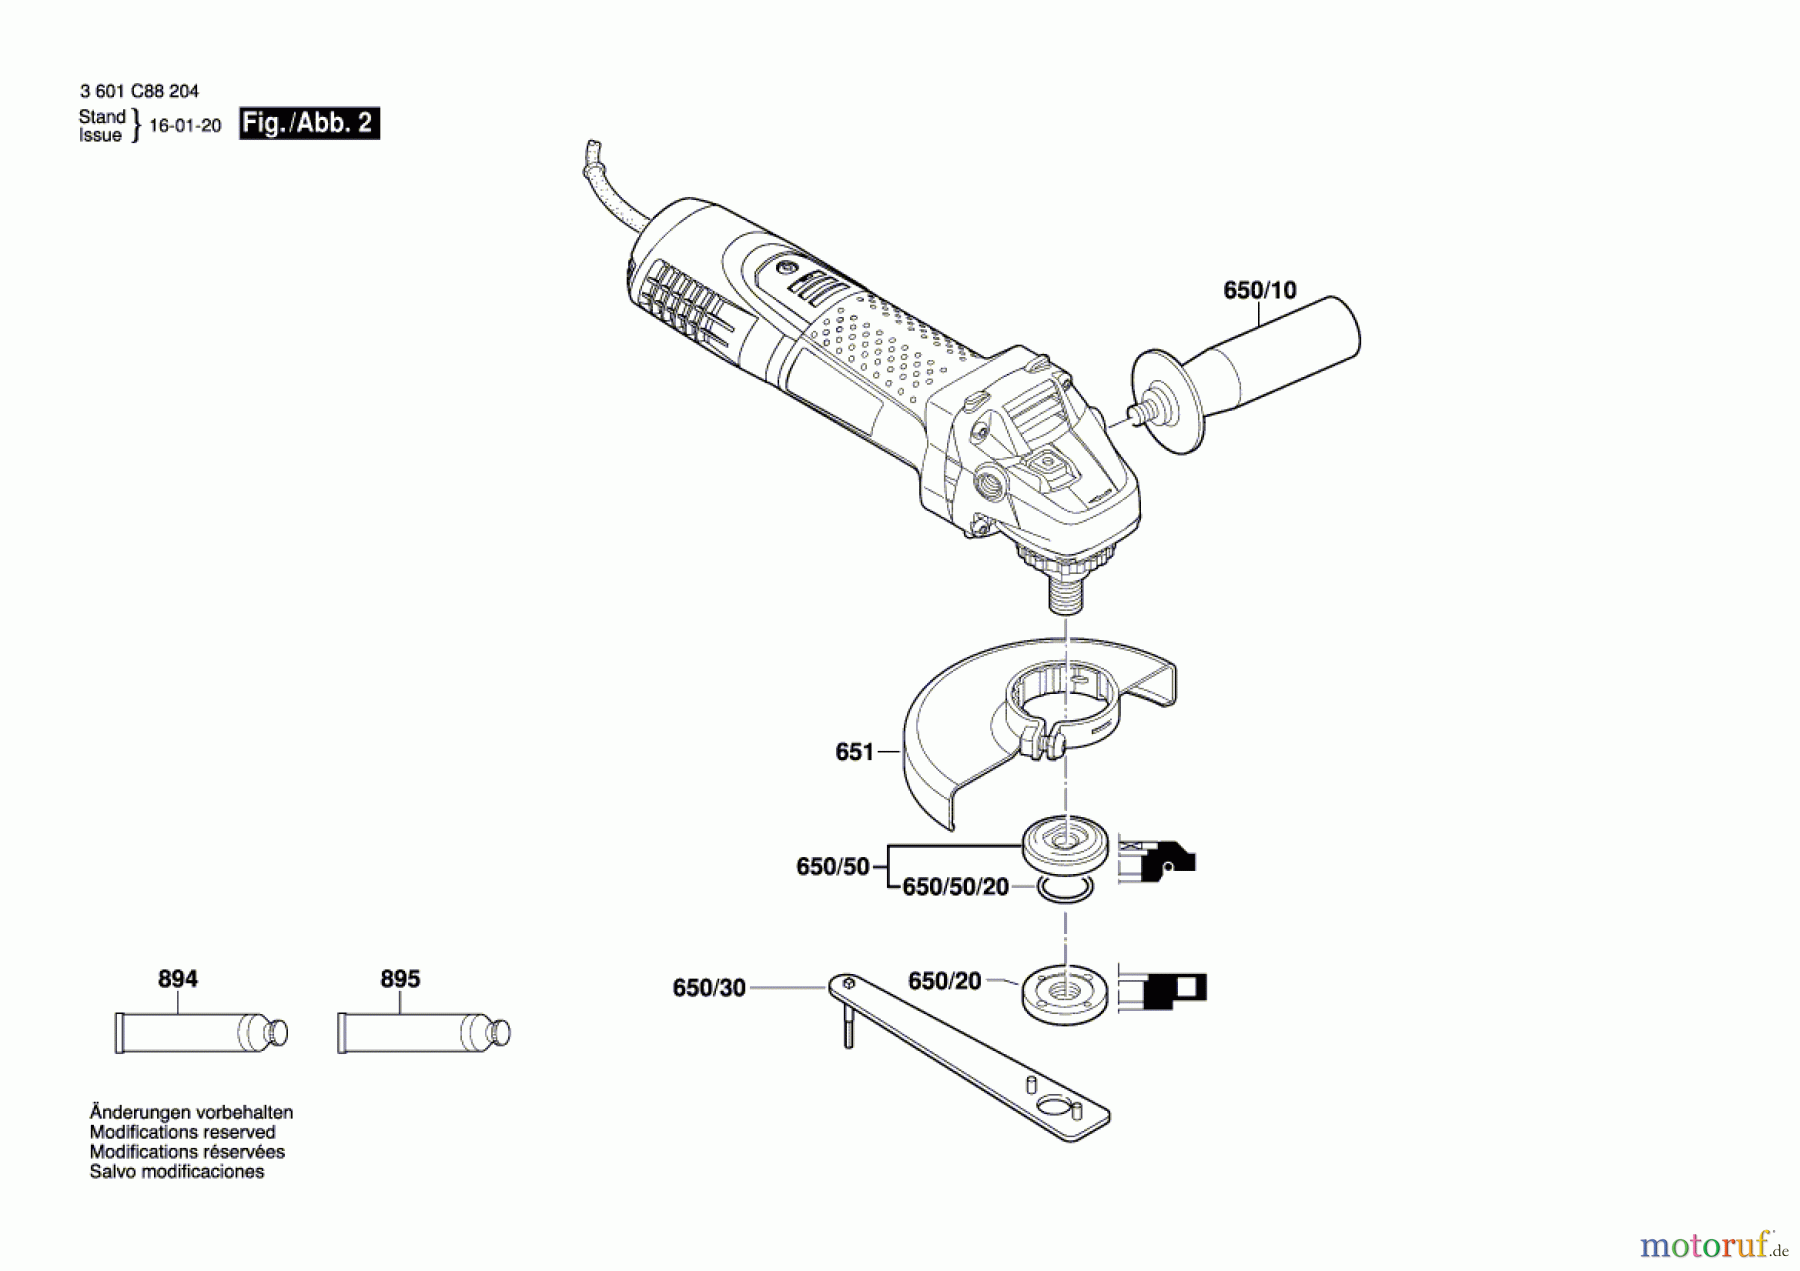  Bosch Werkzeug Winkelschleifer GWS 7-115 E Seite 2